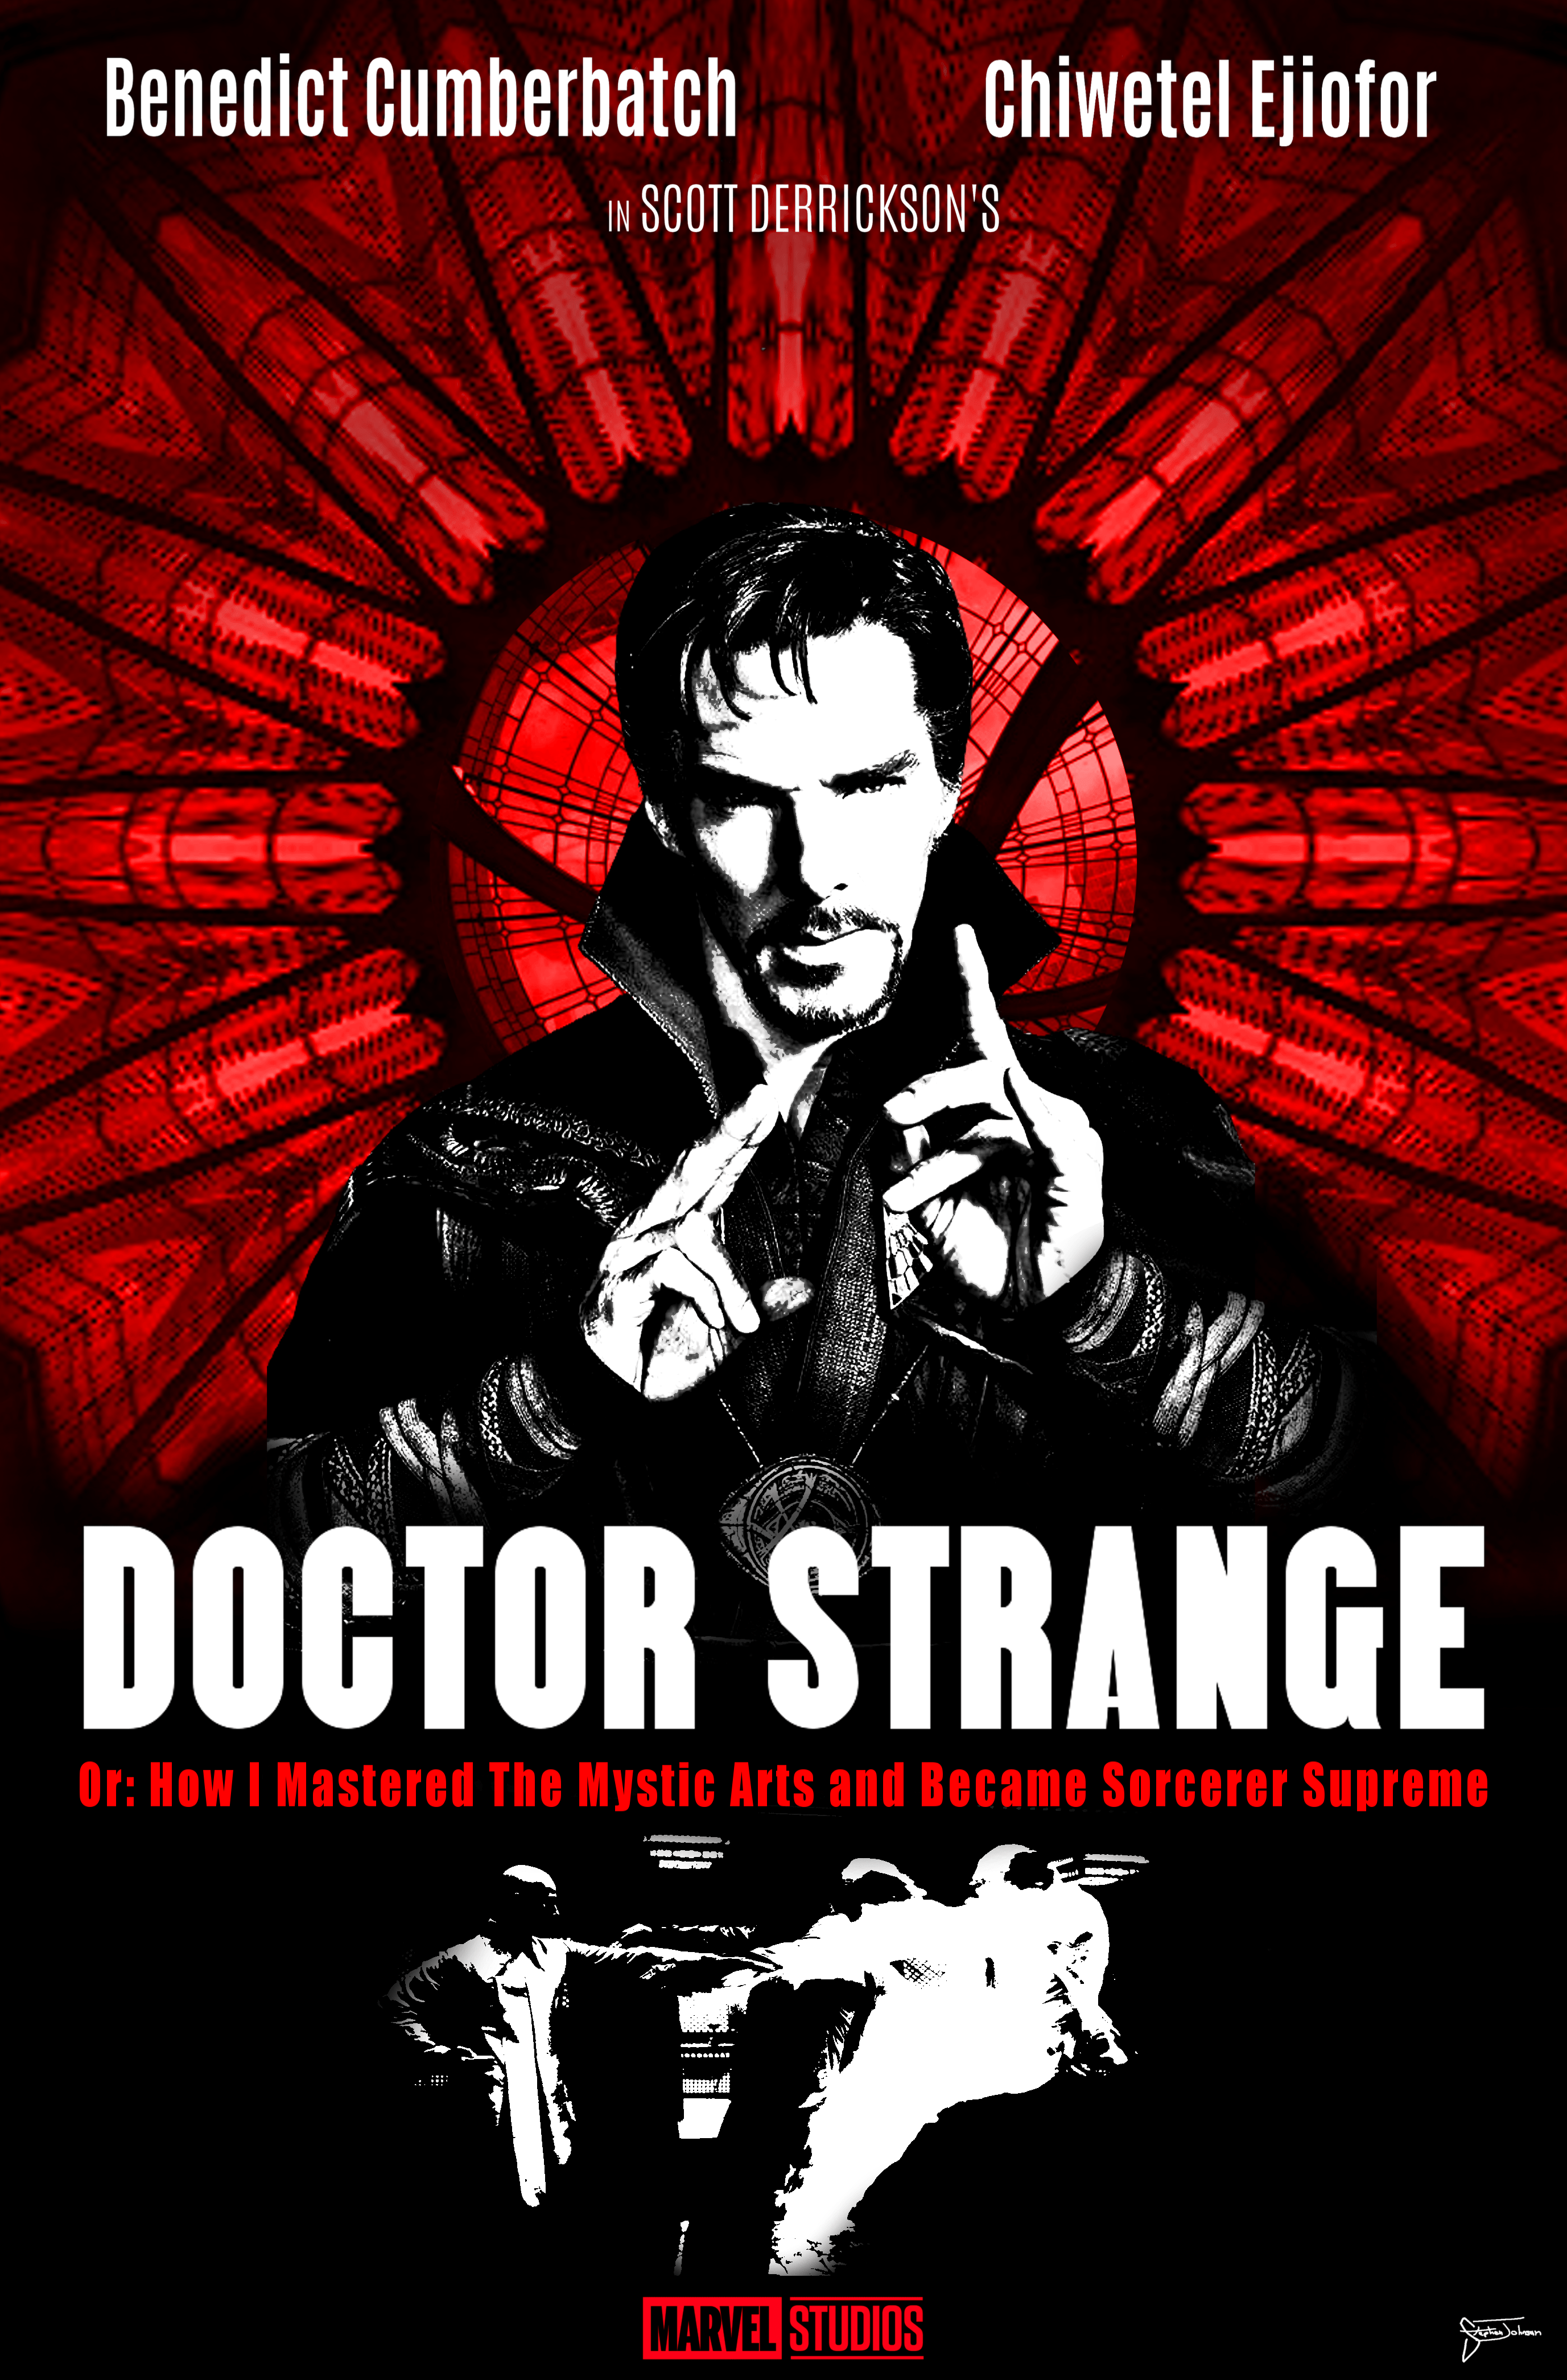 Marvel's Doctor Strange (2016) HD Wallpaper From Gallsource.com